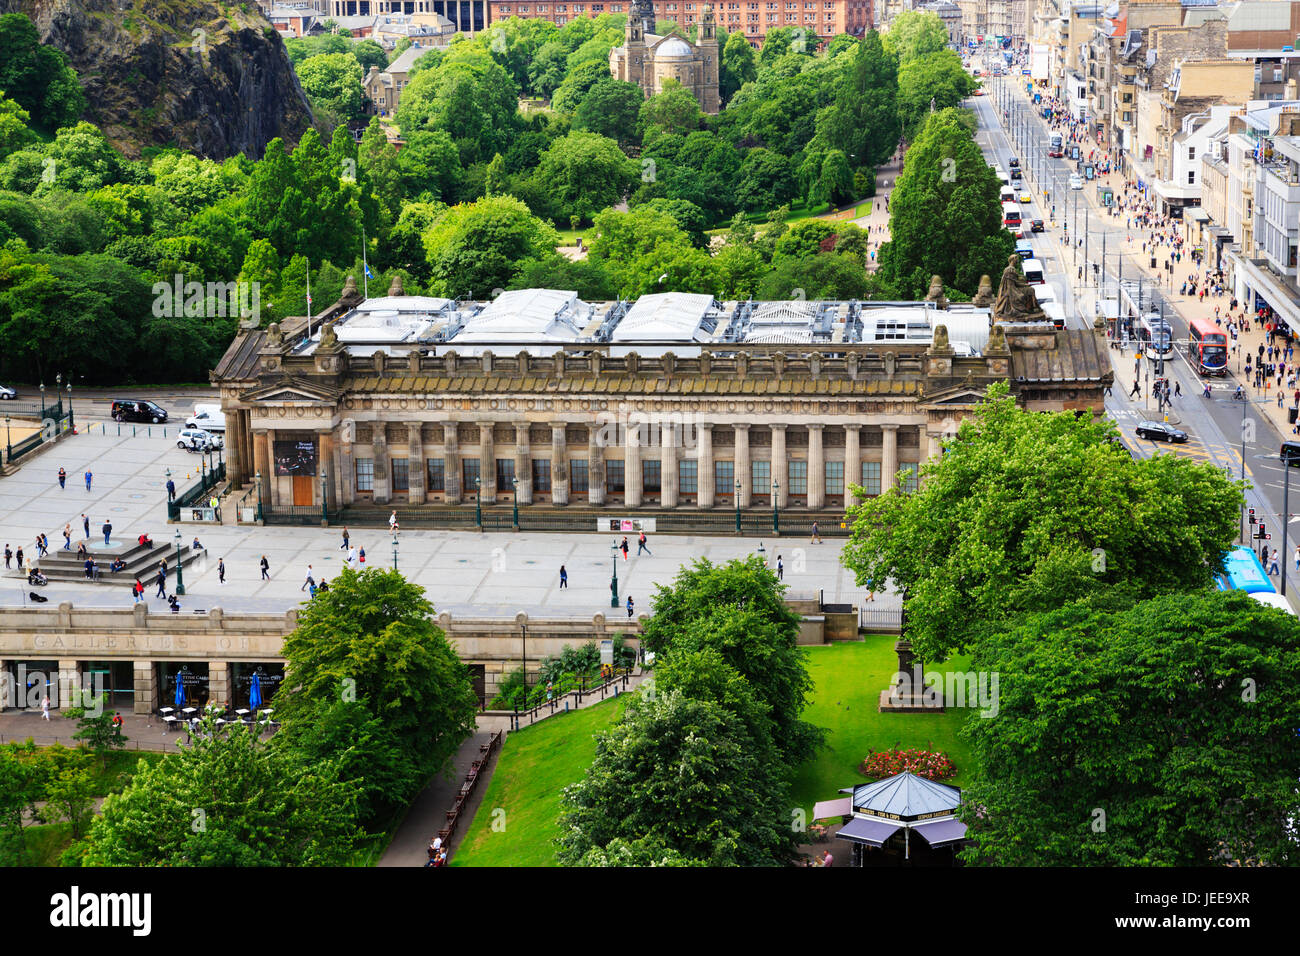 Royal Scottish Academy von oben gesehen, The Mound, Edinburgh, Schottland. Stockfoto